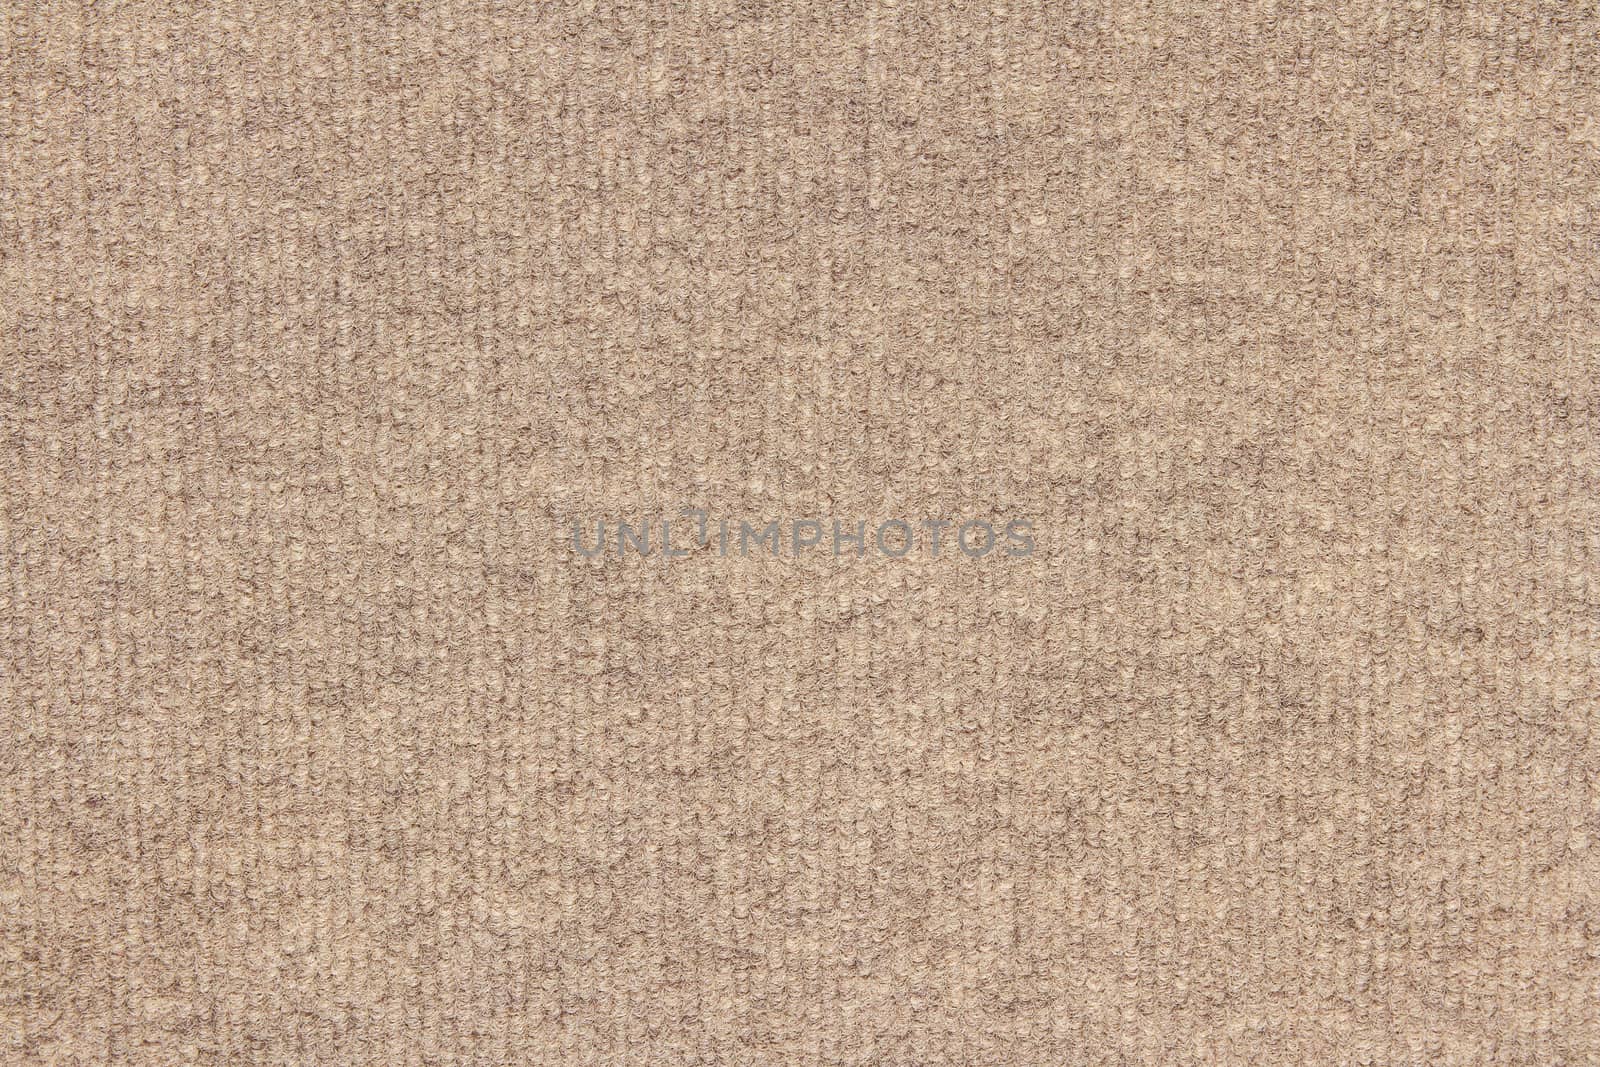 plain beige carpet texture